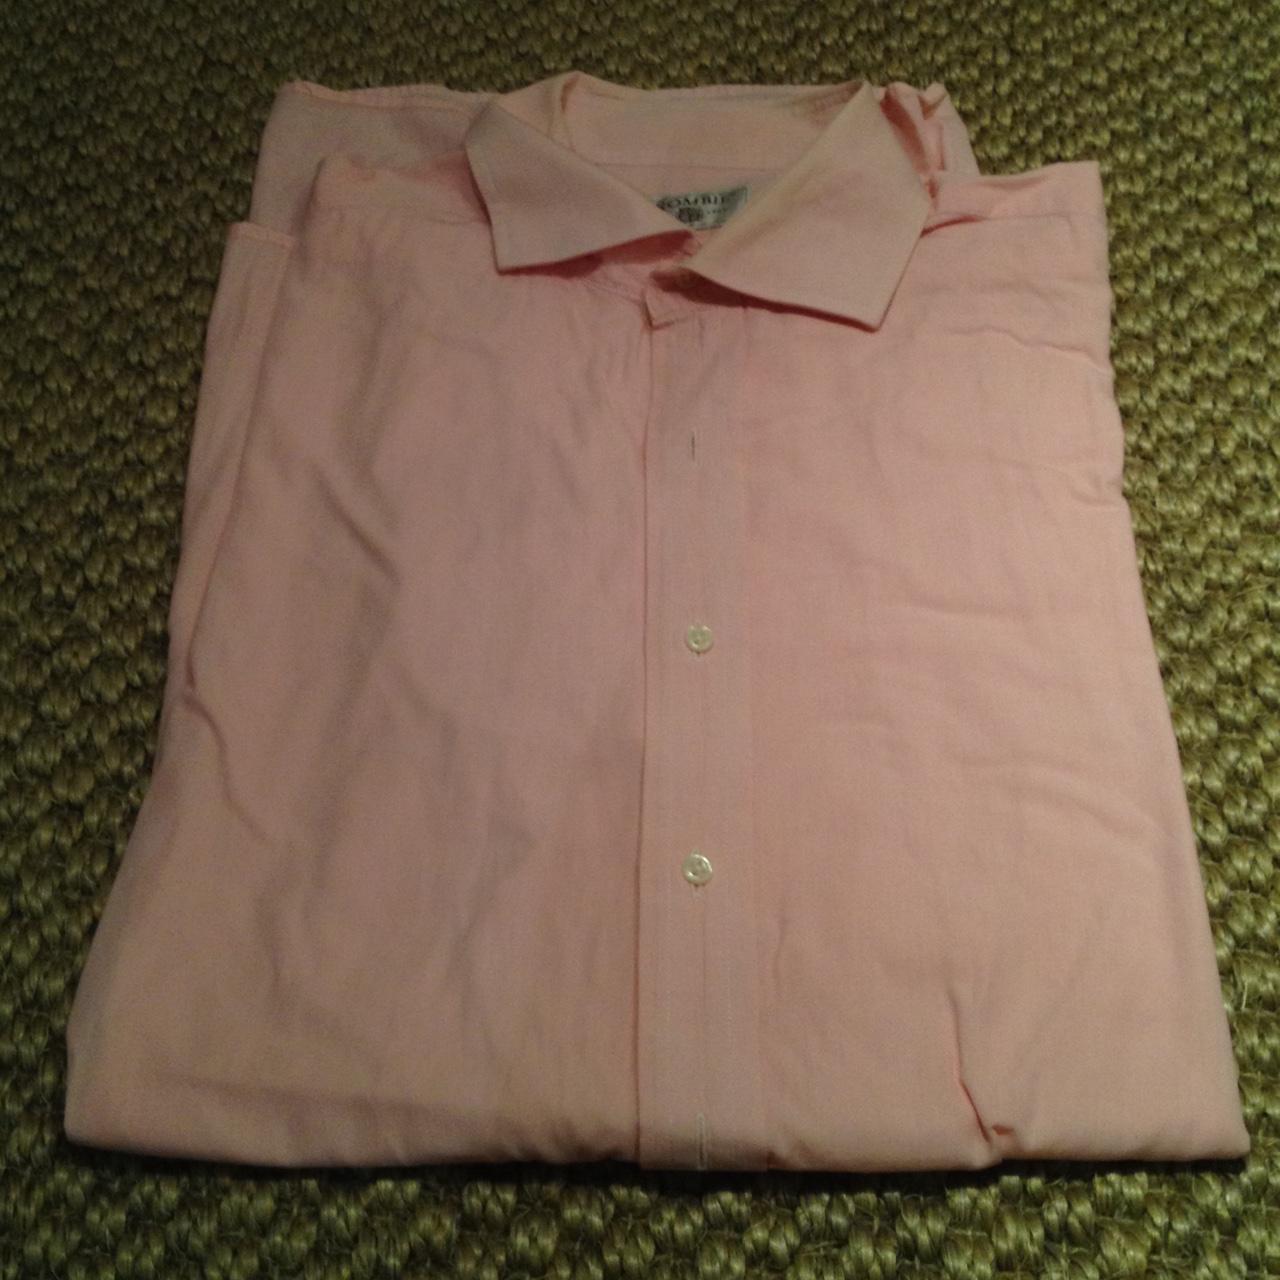 Crombie shirt - light pink - XL - very good... - Depop